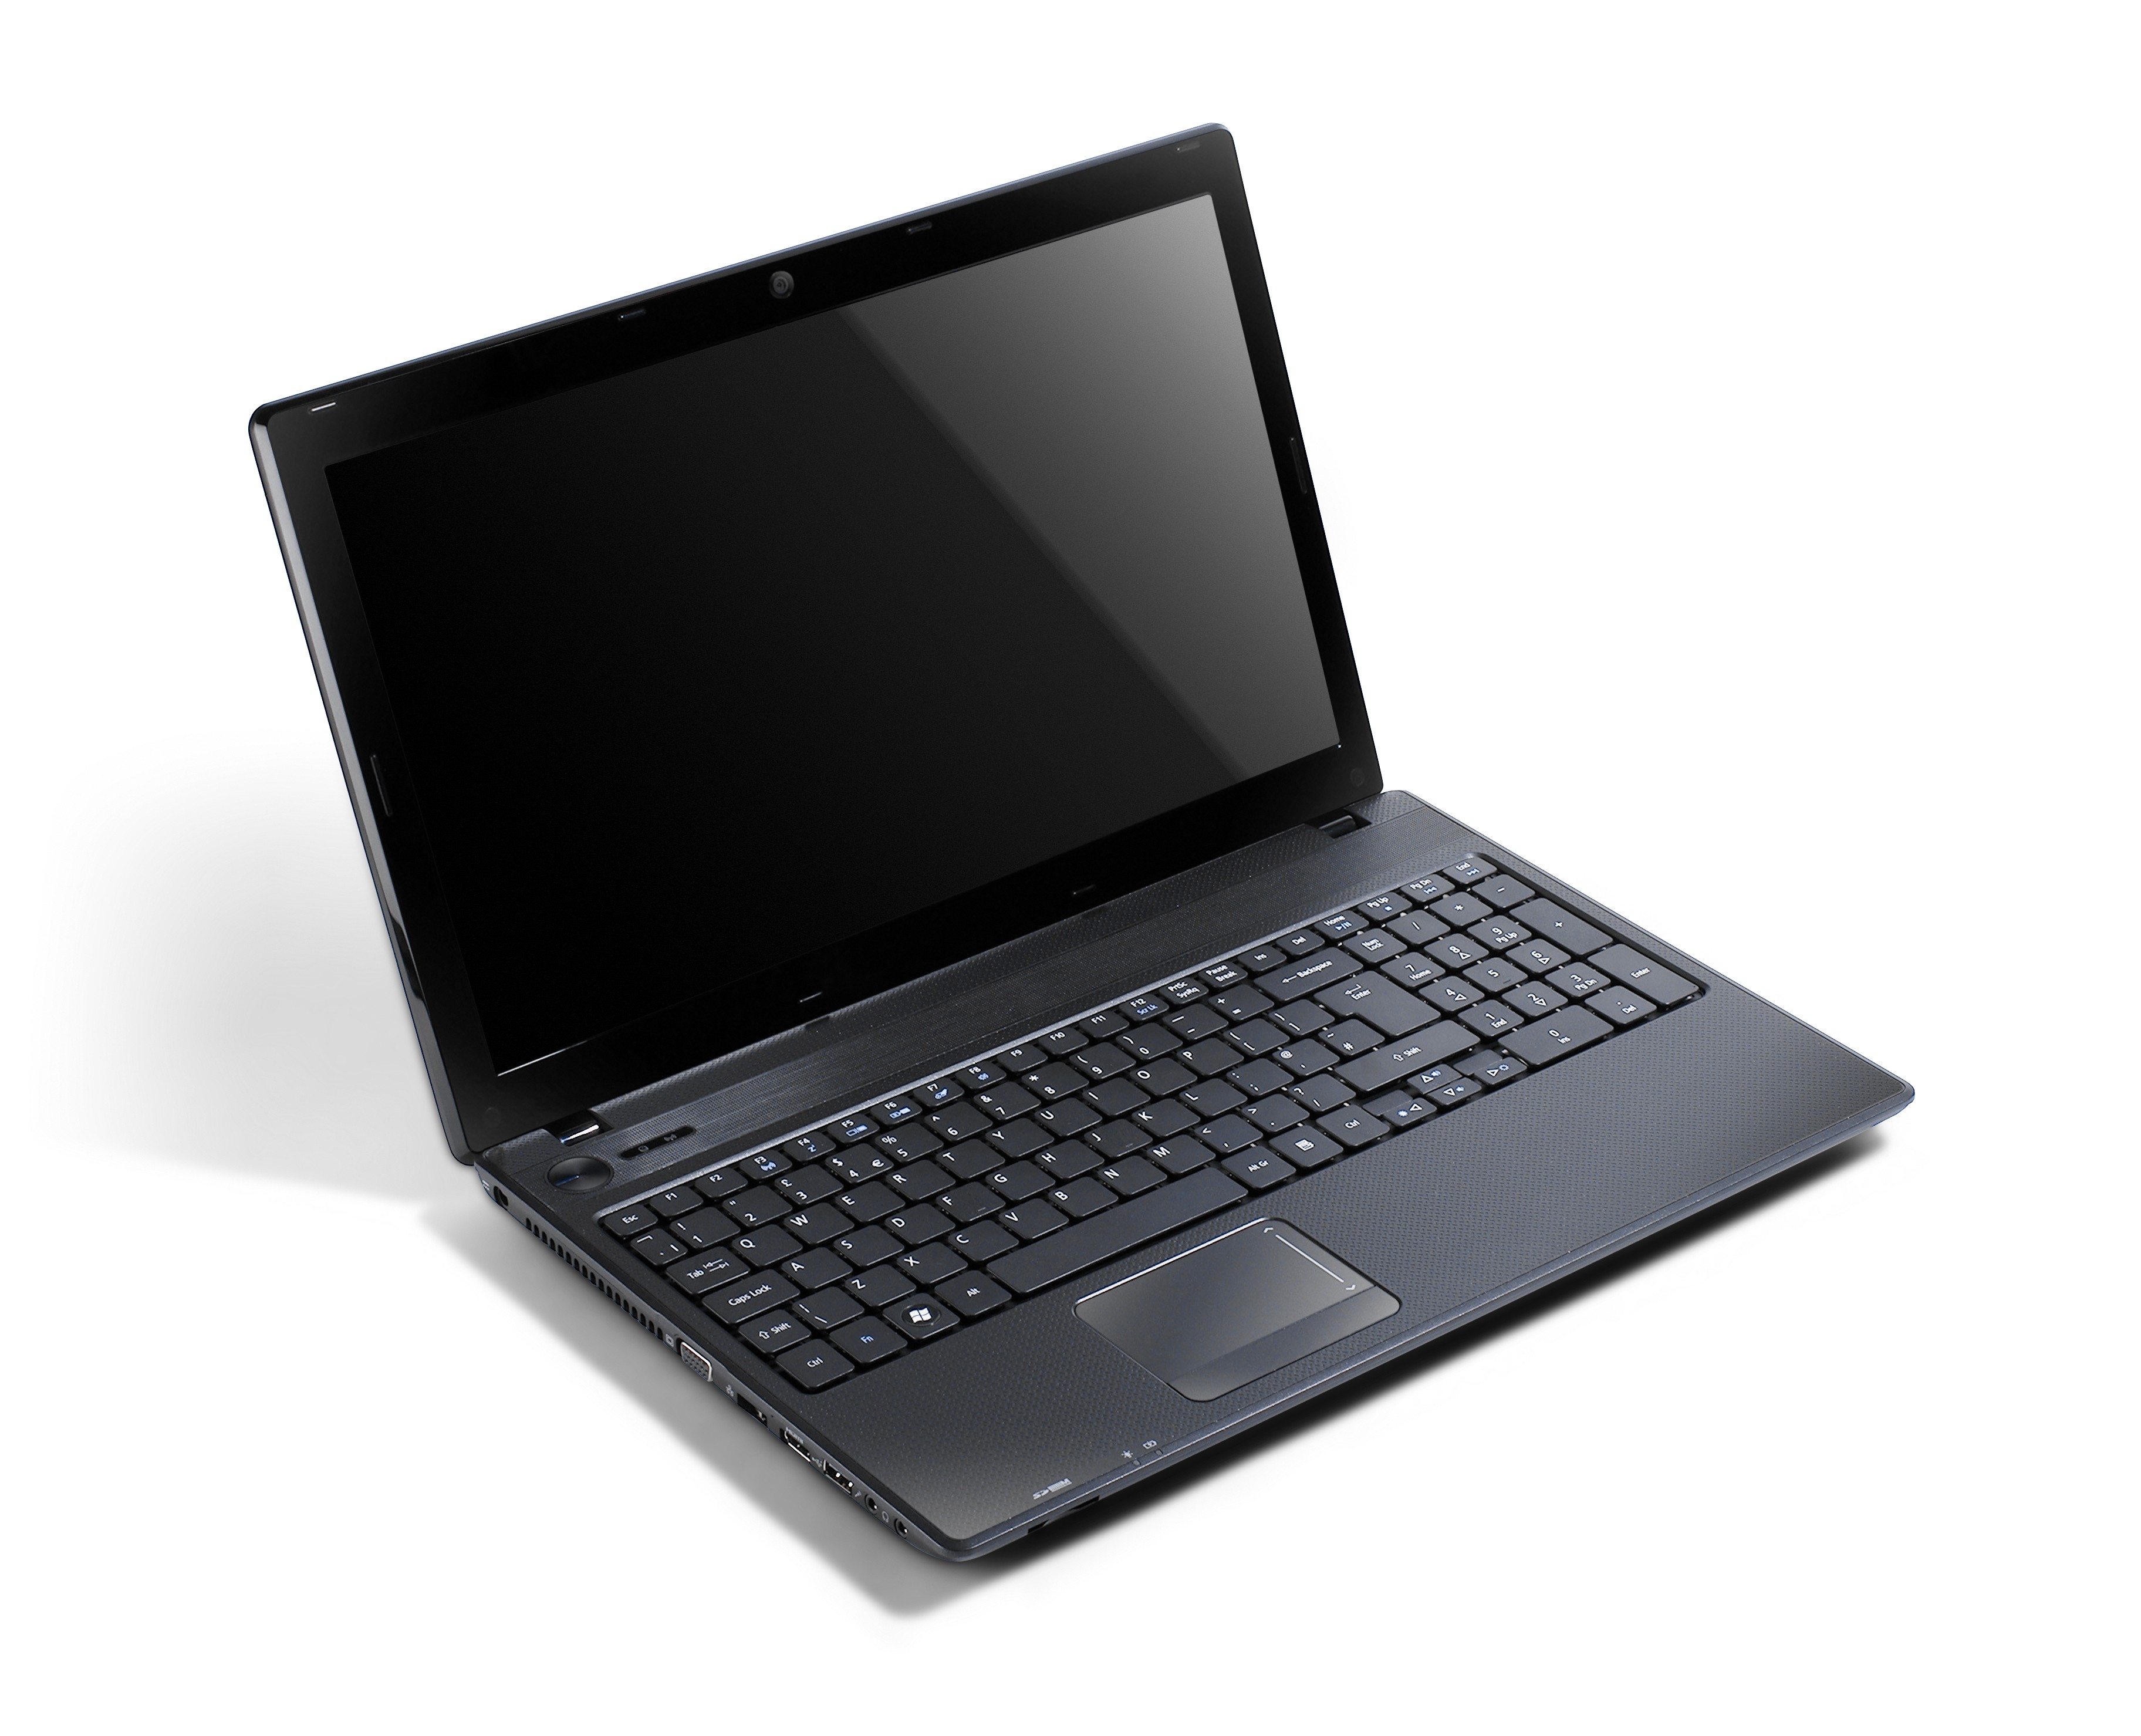 Ноутбук Acer Aspire 5742g Цена